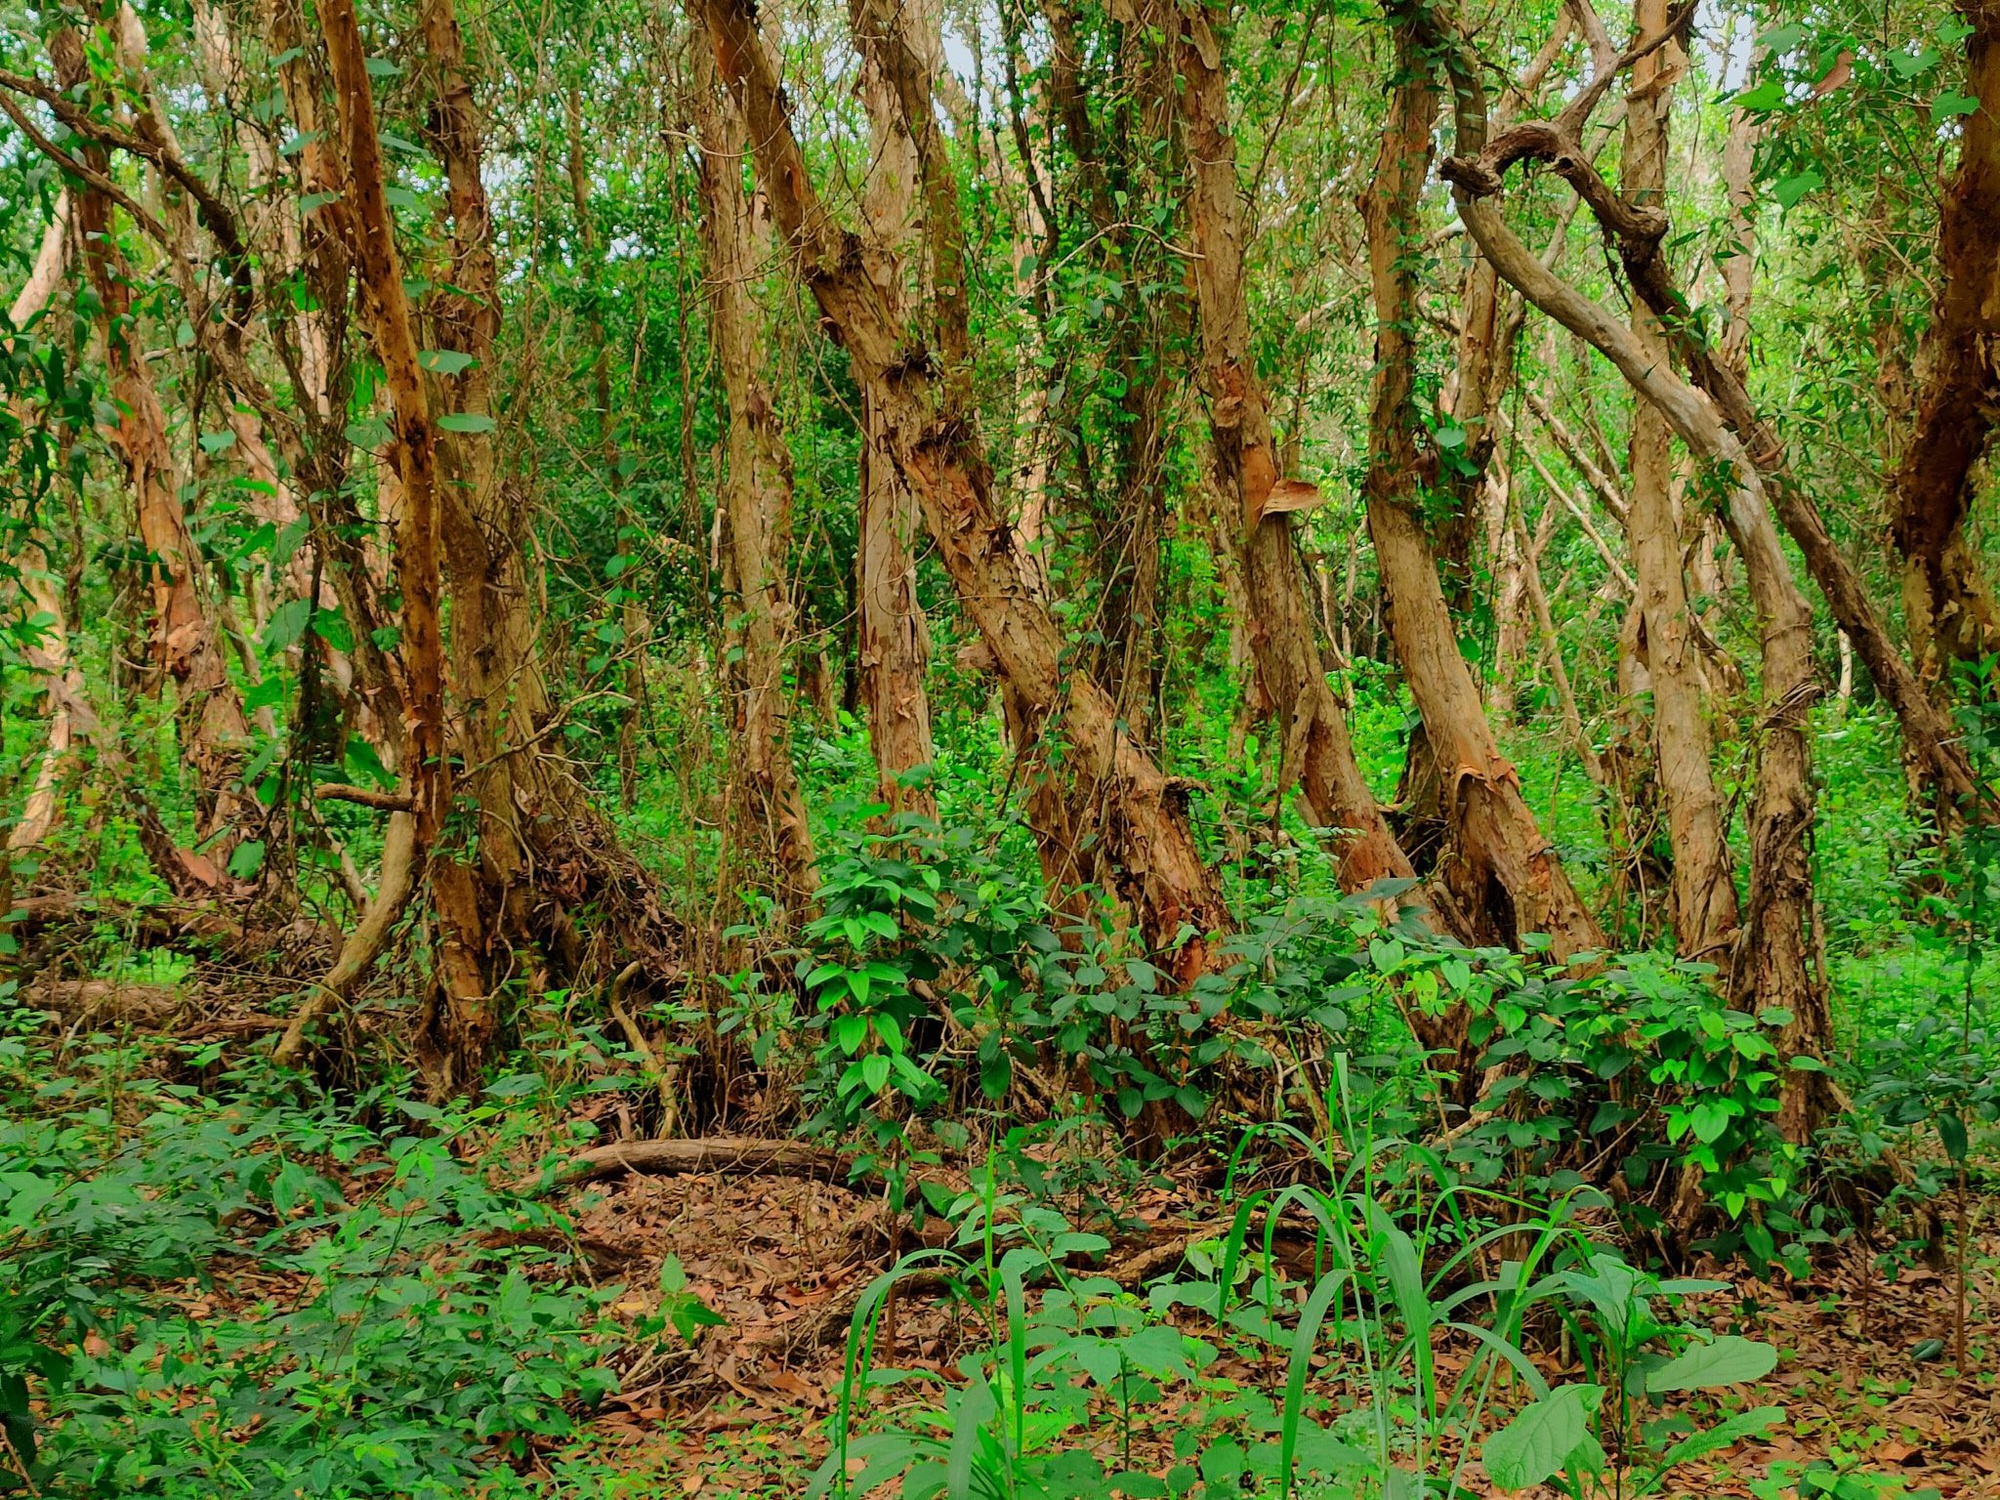 Khu rừng này ở Bà Rịa-Vũng Tàu, cách Sài Gòn 150km đẹp huyền bí kiểu gì mà nhiều người vô xem? - Ảnh 2.